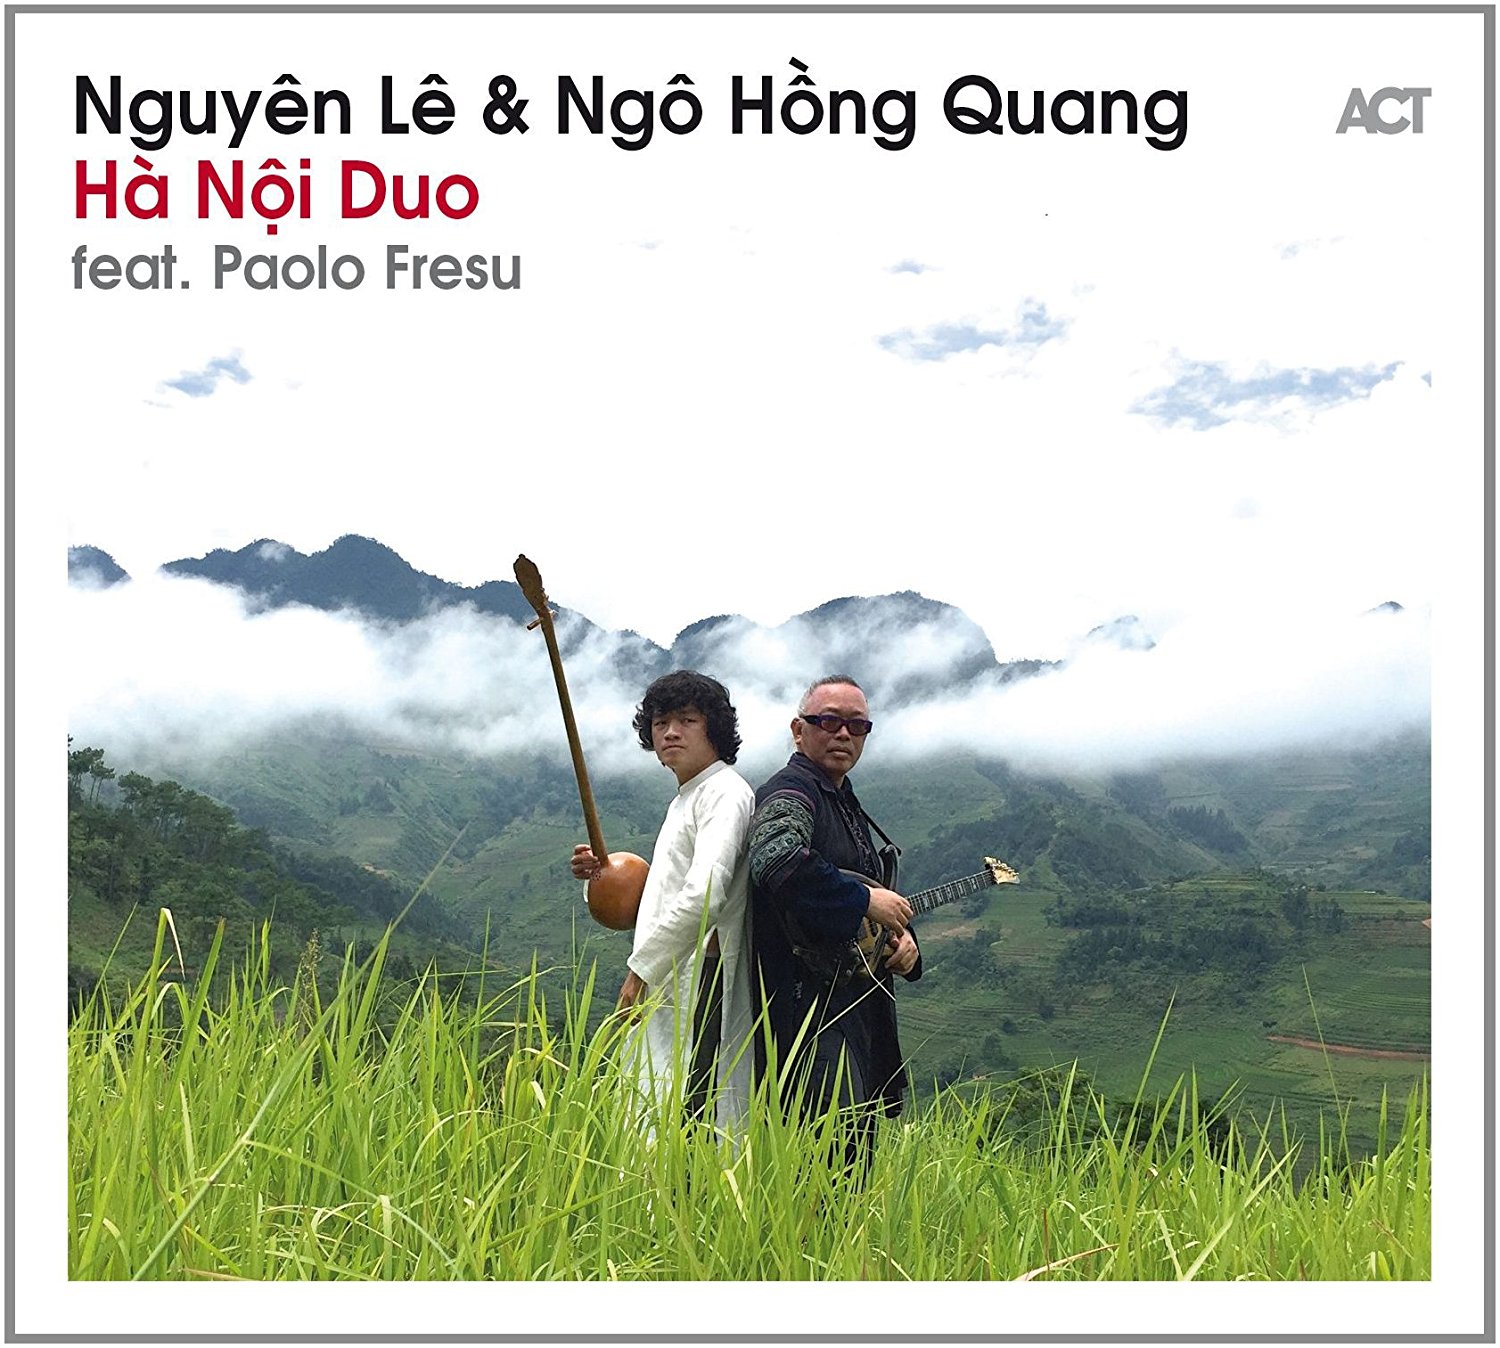 NGUYÊN LÊ - Hà Nội Duo cover 